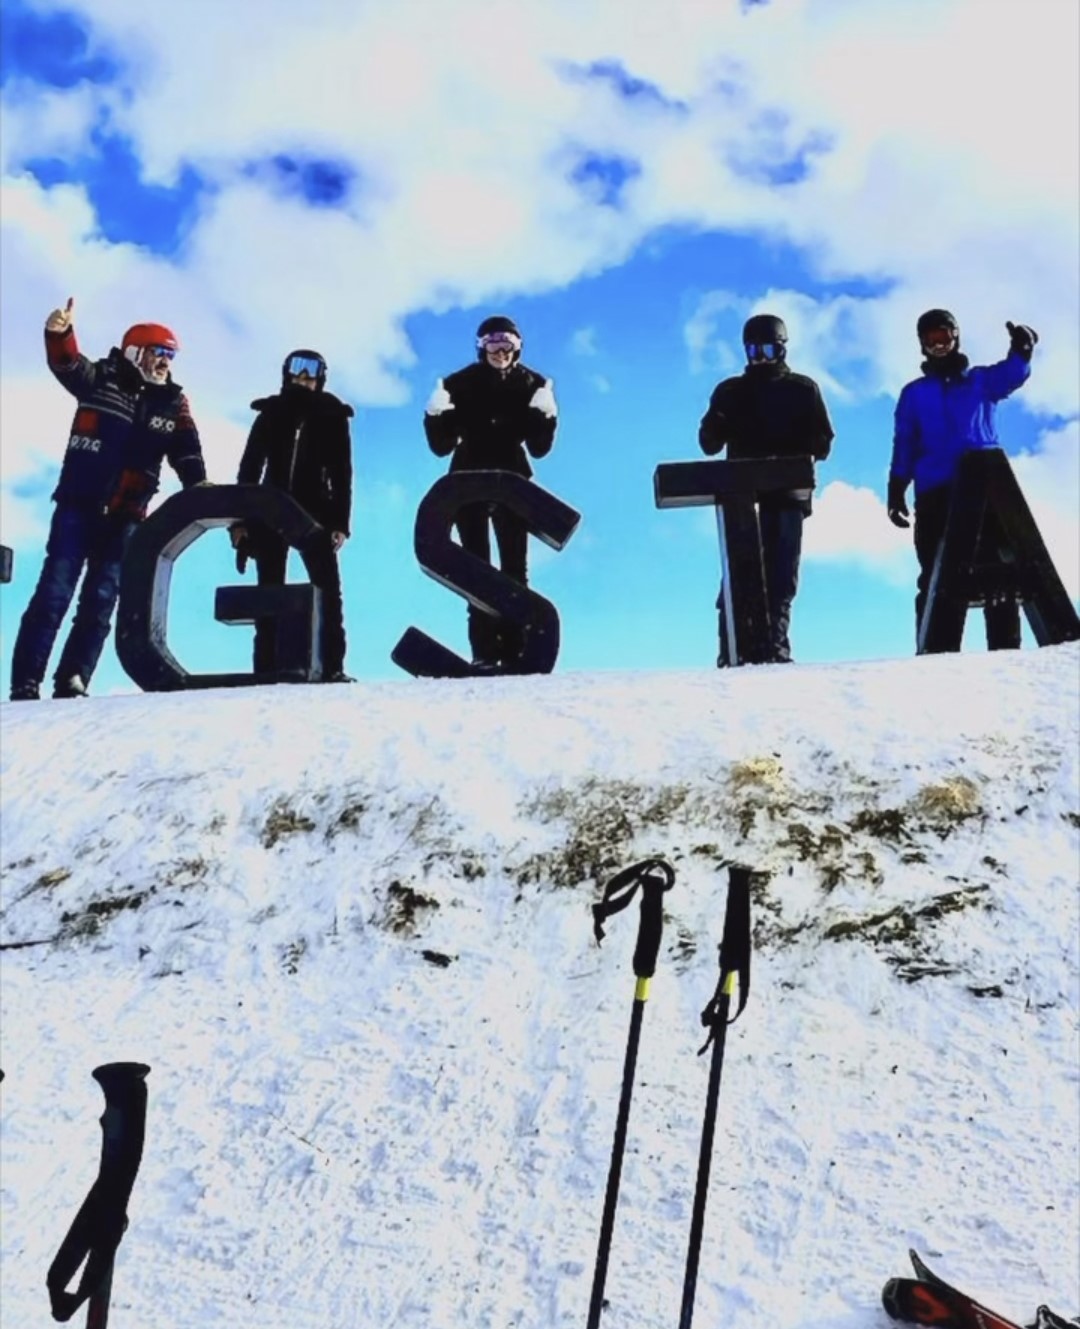 Σύσσωμη η οικογένεια Τσάκου στις χιονισμένες πλαγιές του Gstaad